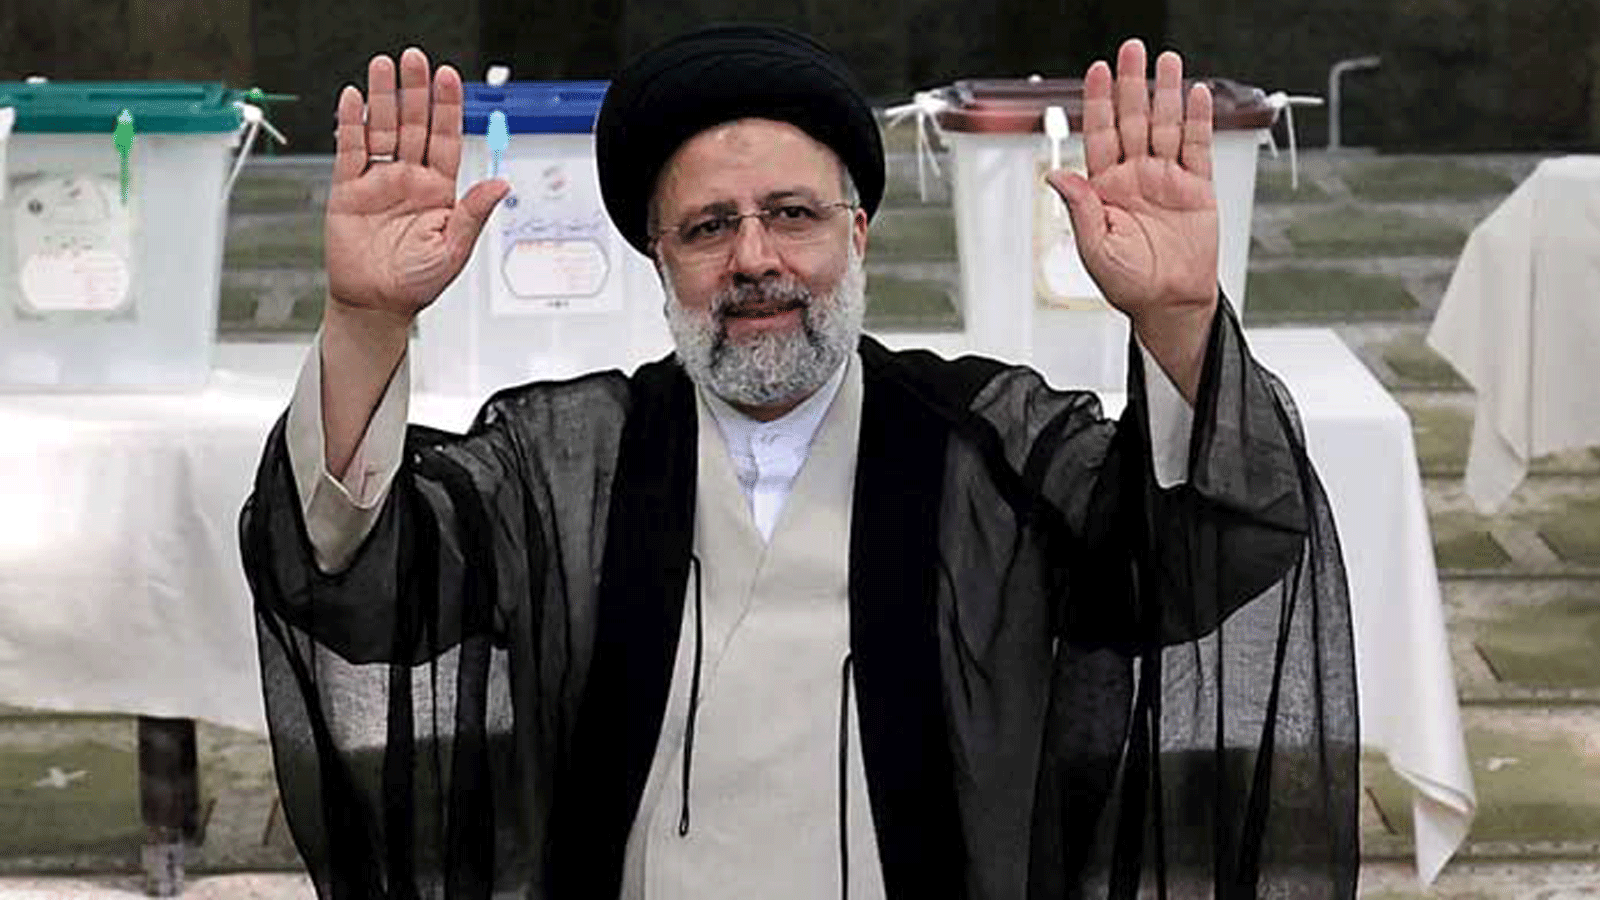 إبراهيم رئيسي بعيد الإدلاء بصوته في الانتخابات الرئاسية، في طهران. 18 حزيران/يونيو 2021